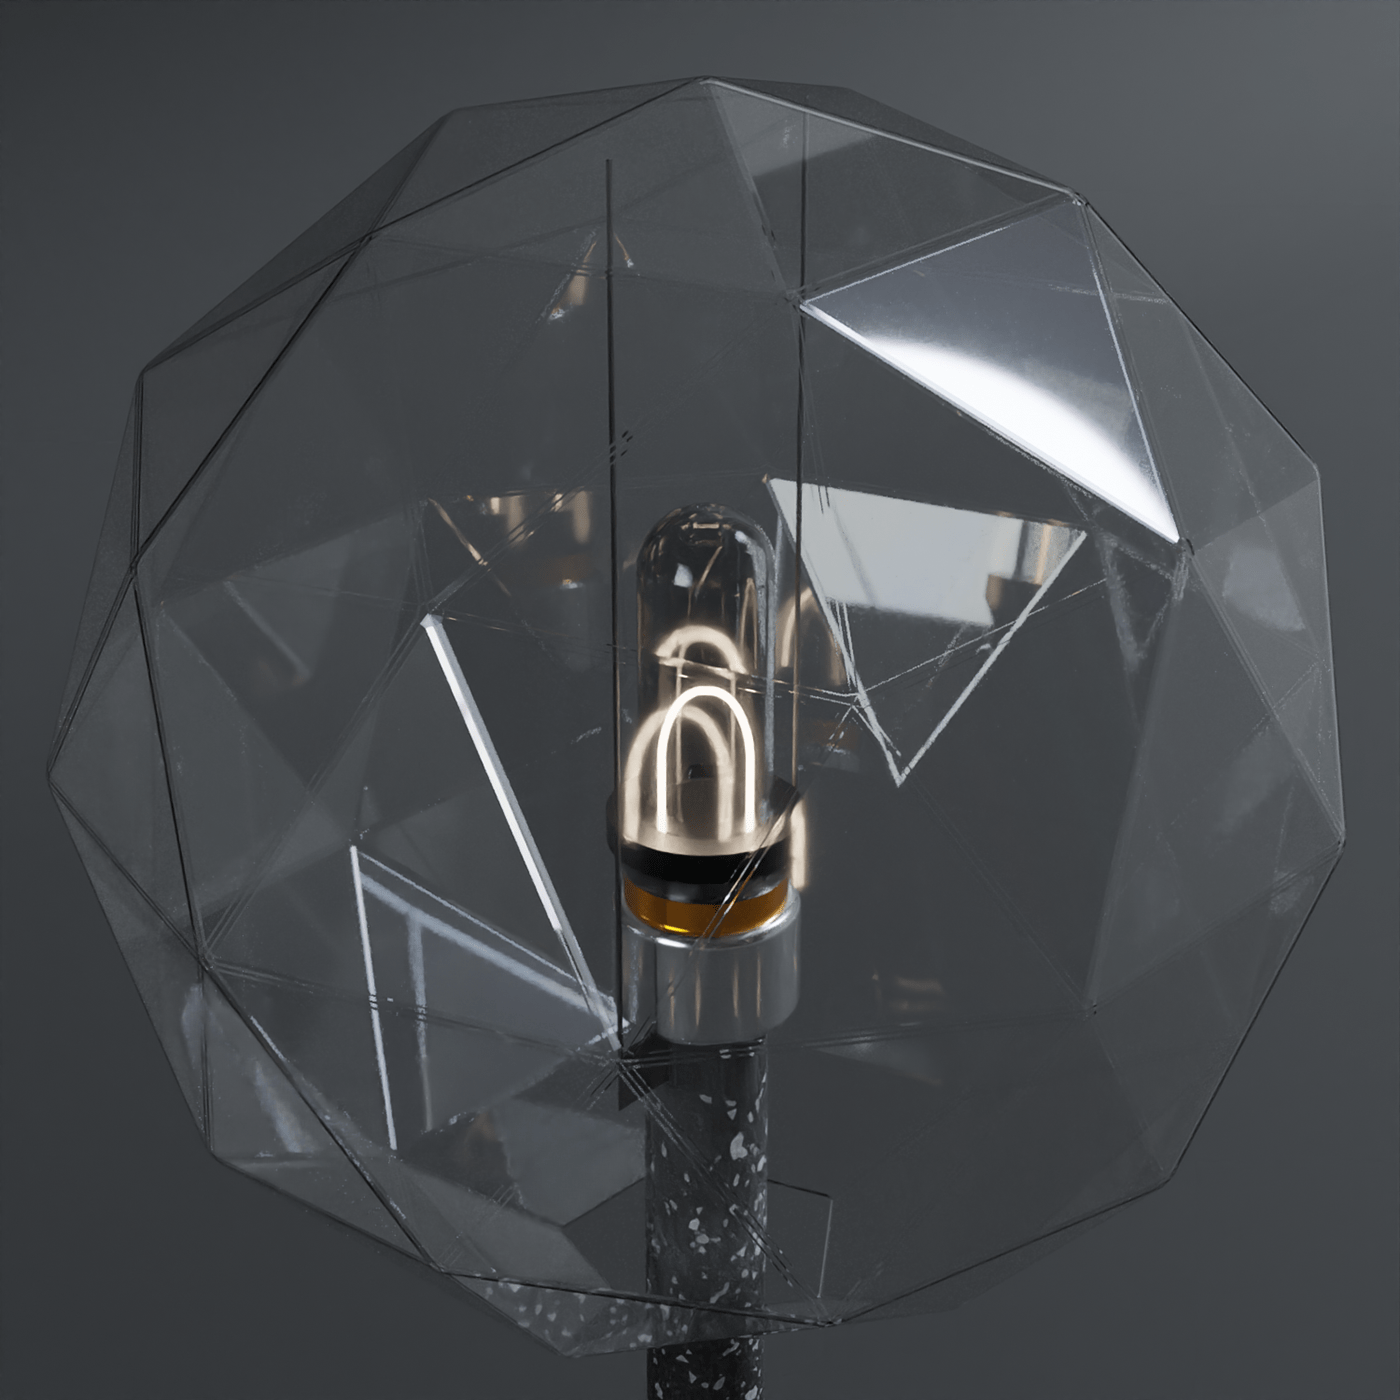 blender3d desklamp furniture industrial design  interior design  Lamp lamp design product product design  Render